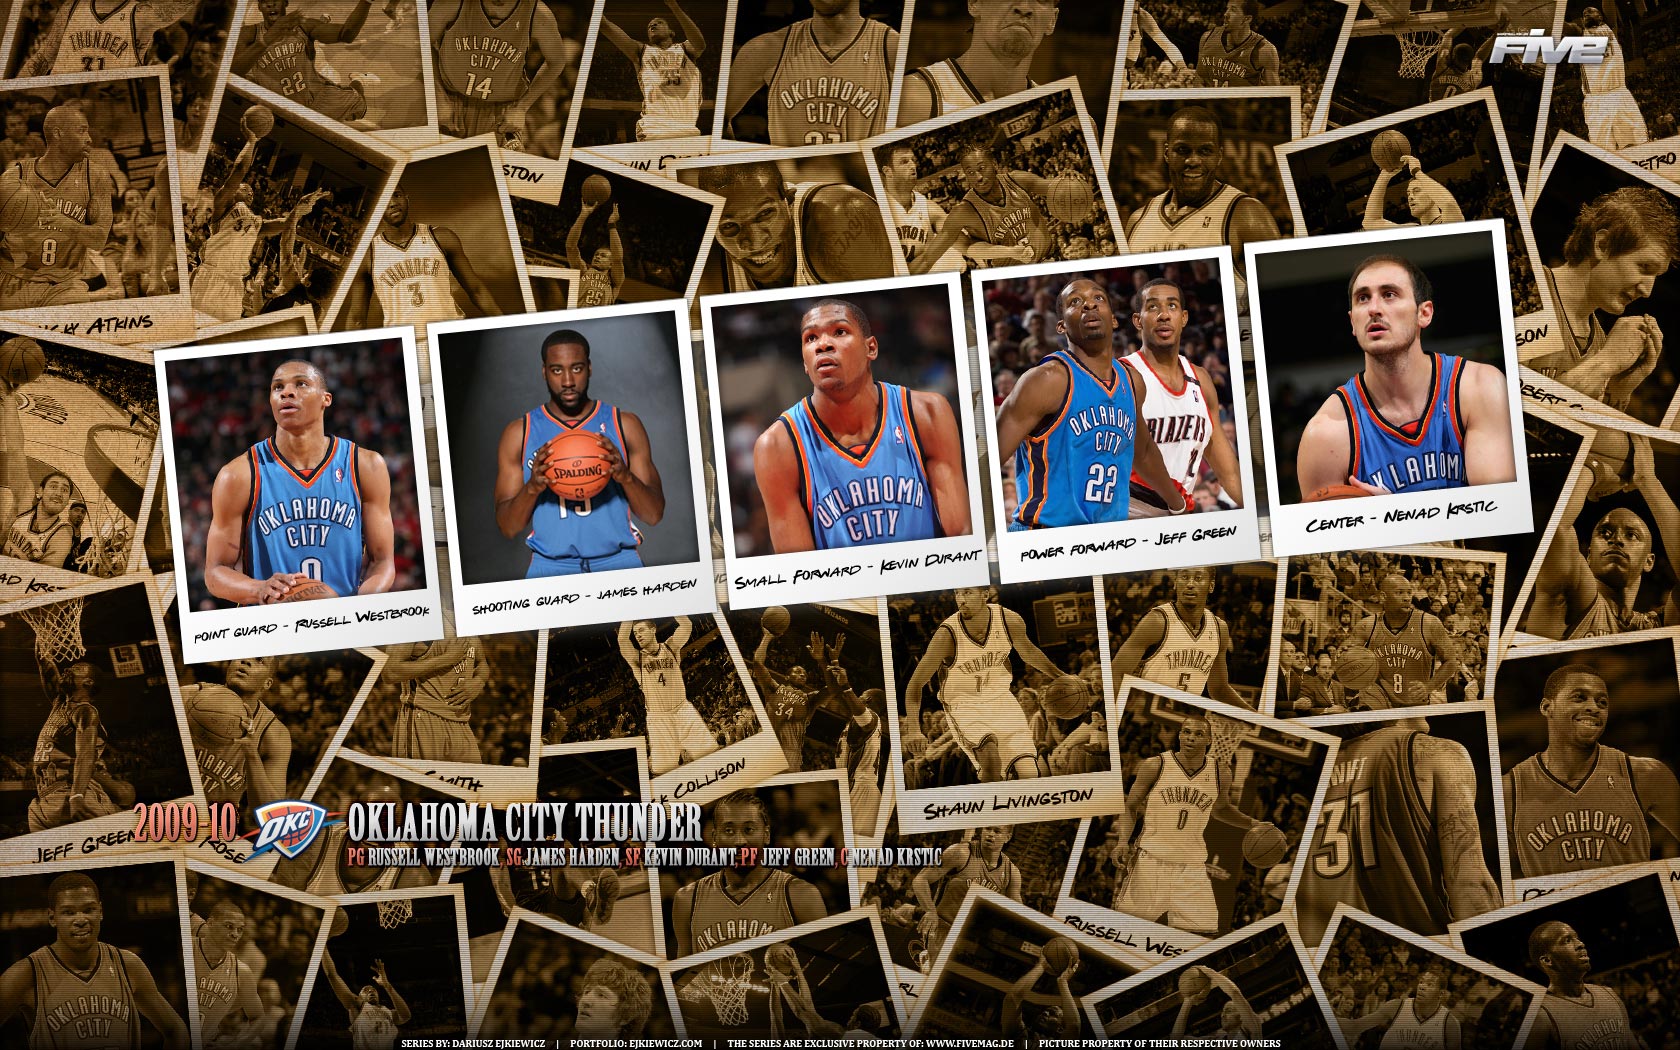 Oklahoma City Thunder Wallpapers | Basketball Wallpapers at ...